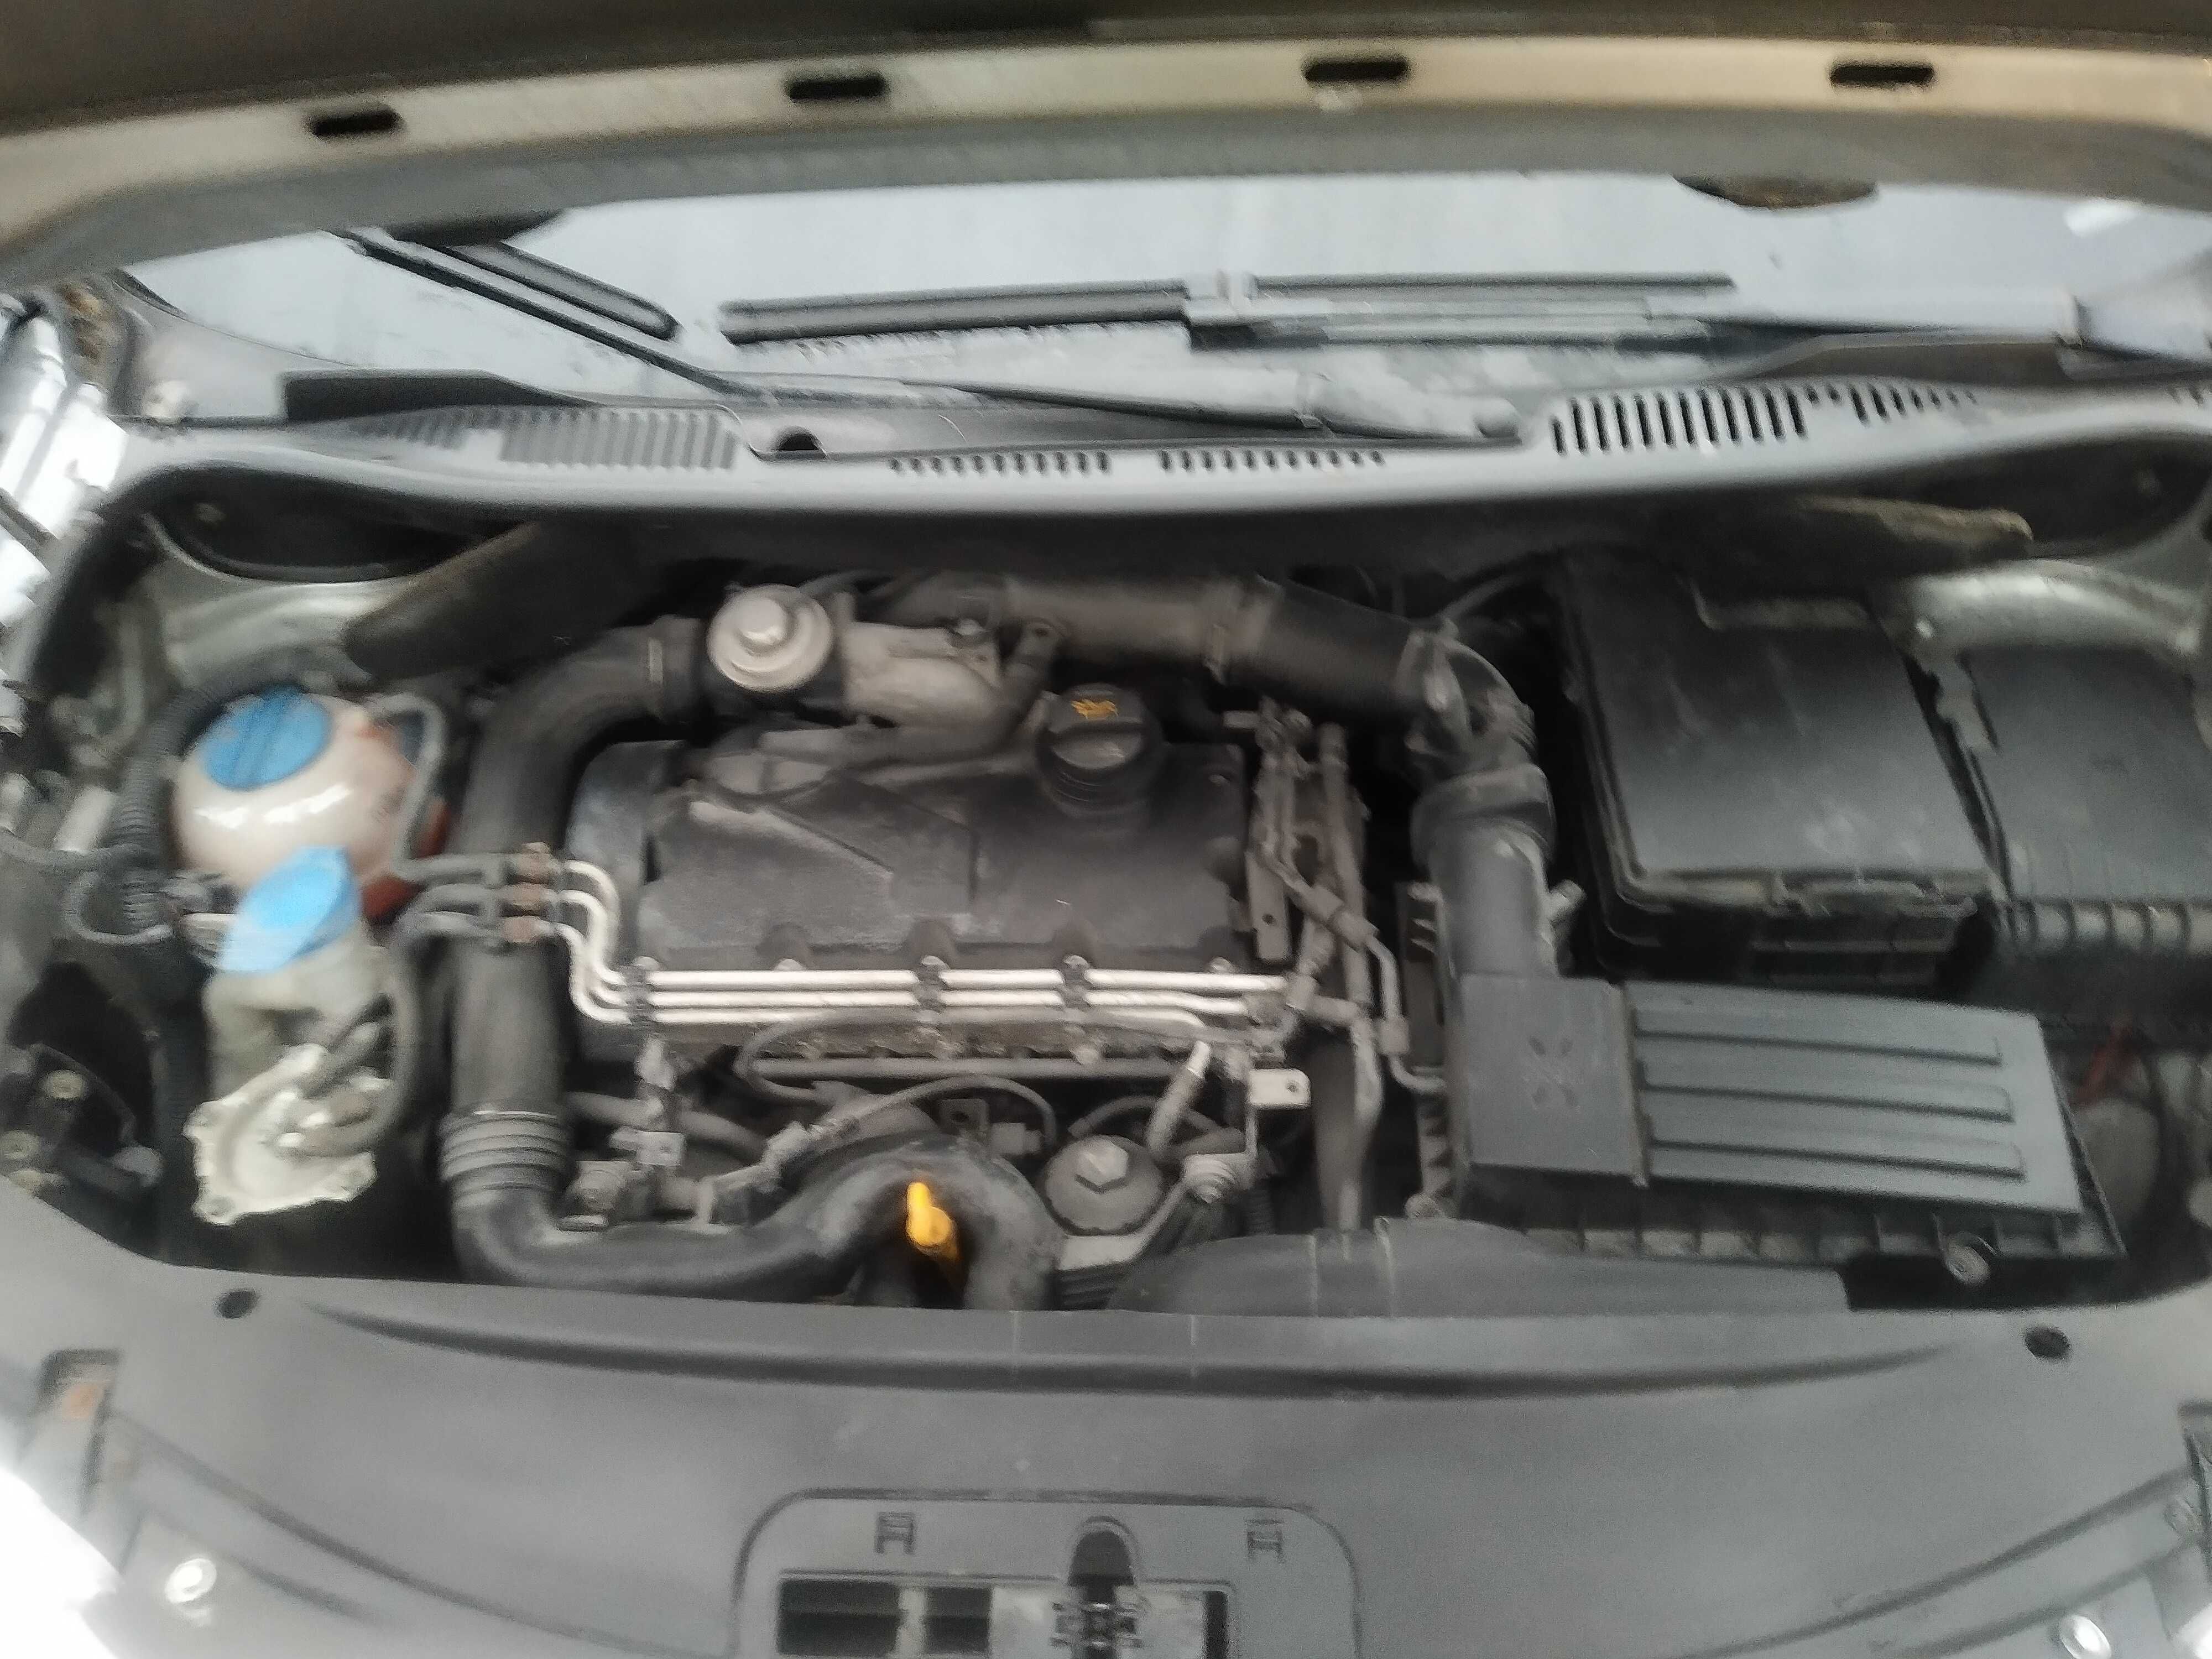 VW Caddy 1.9 TDi  158 tyś km